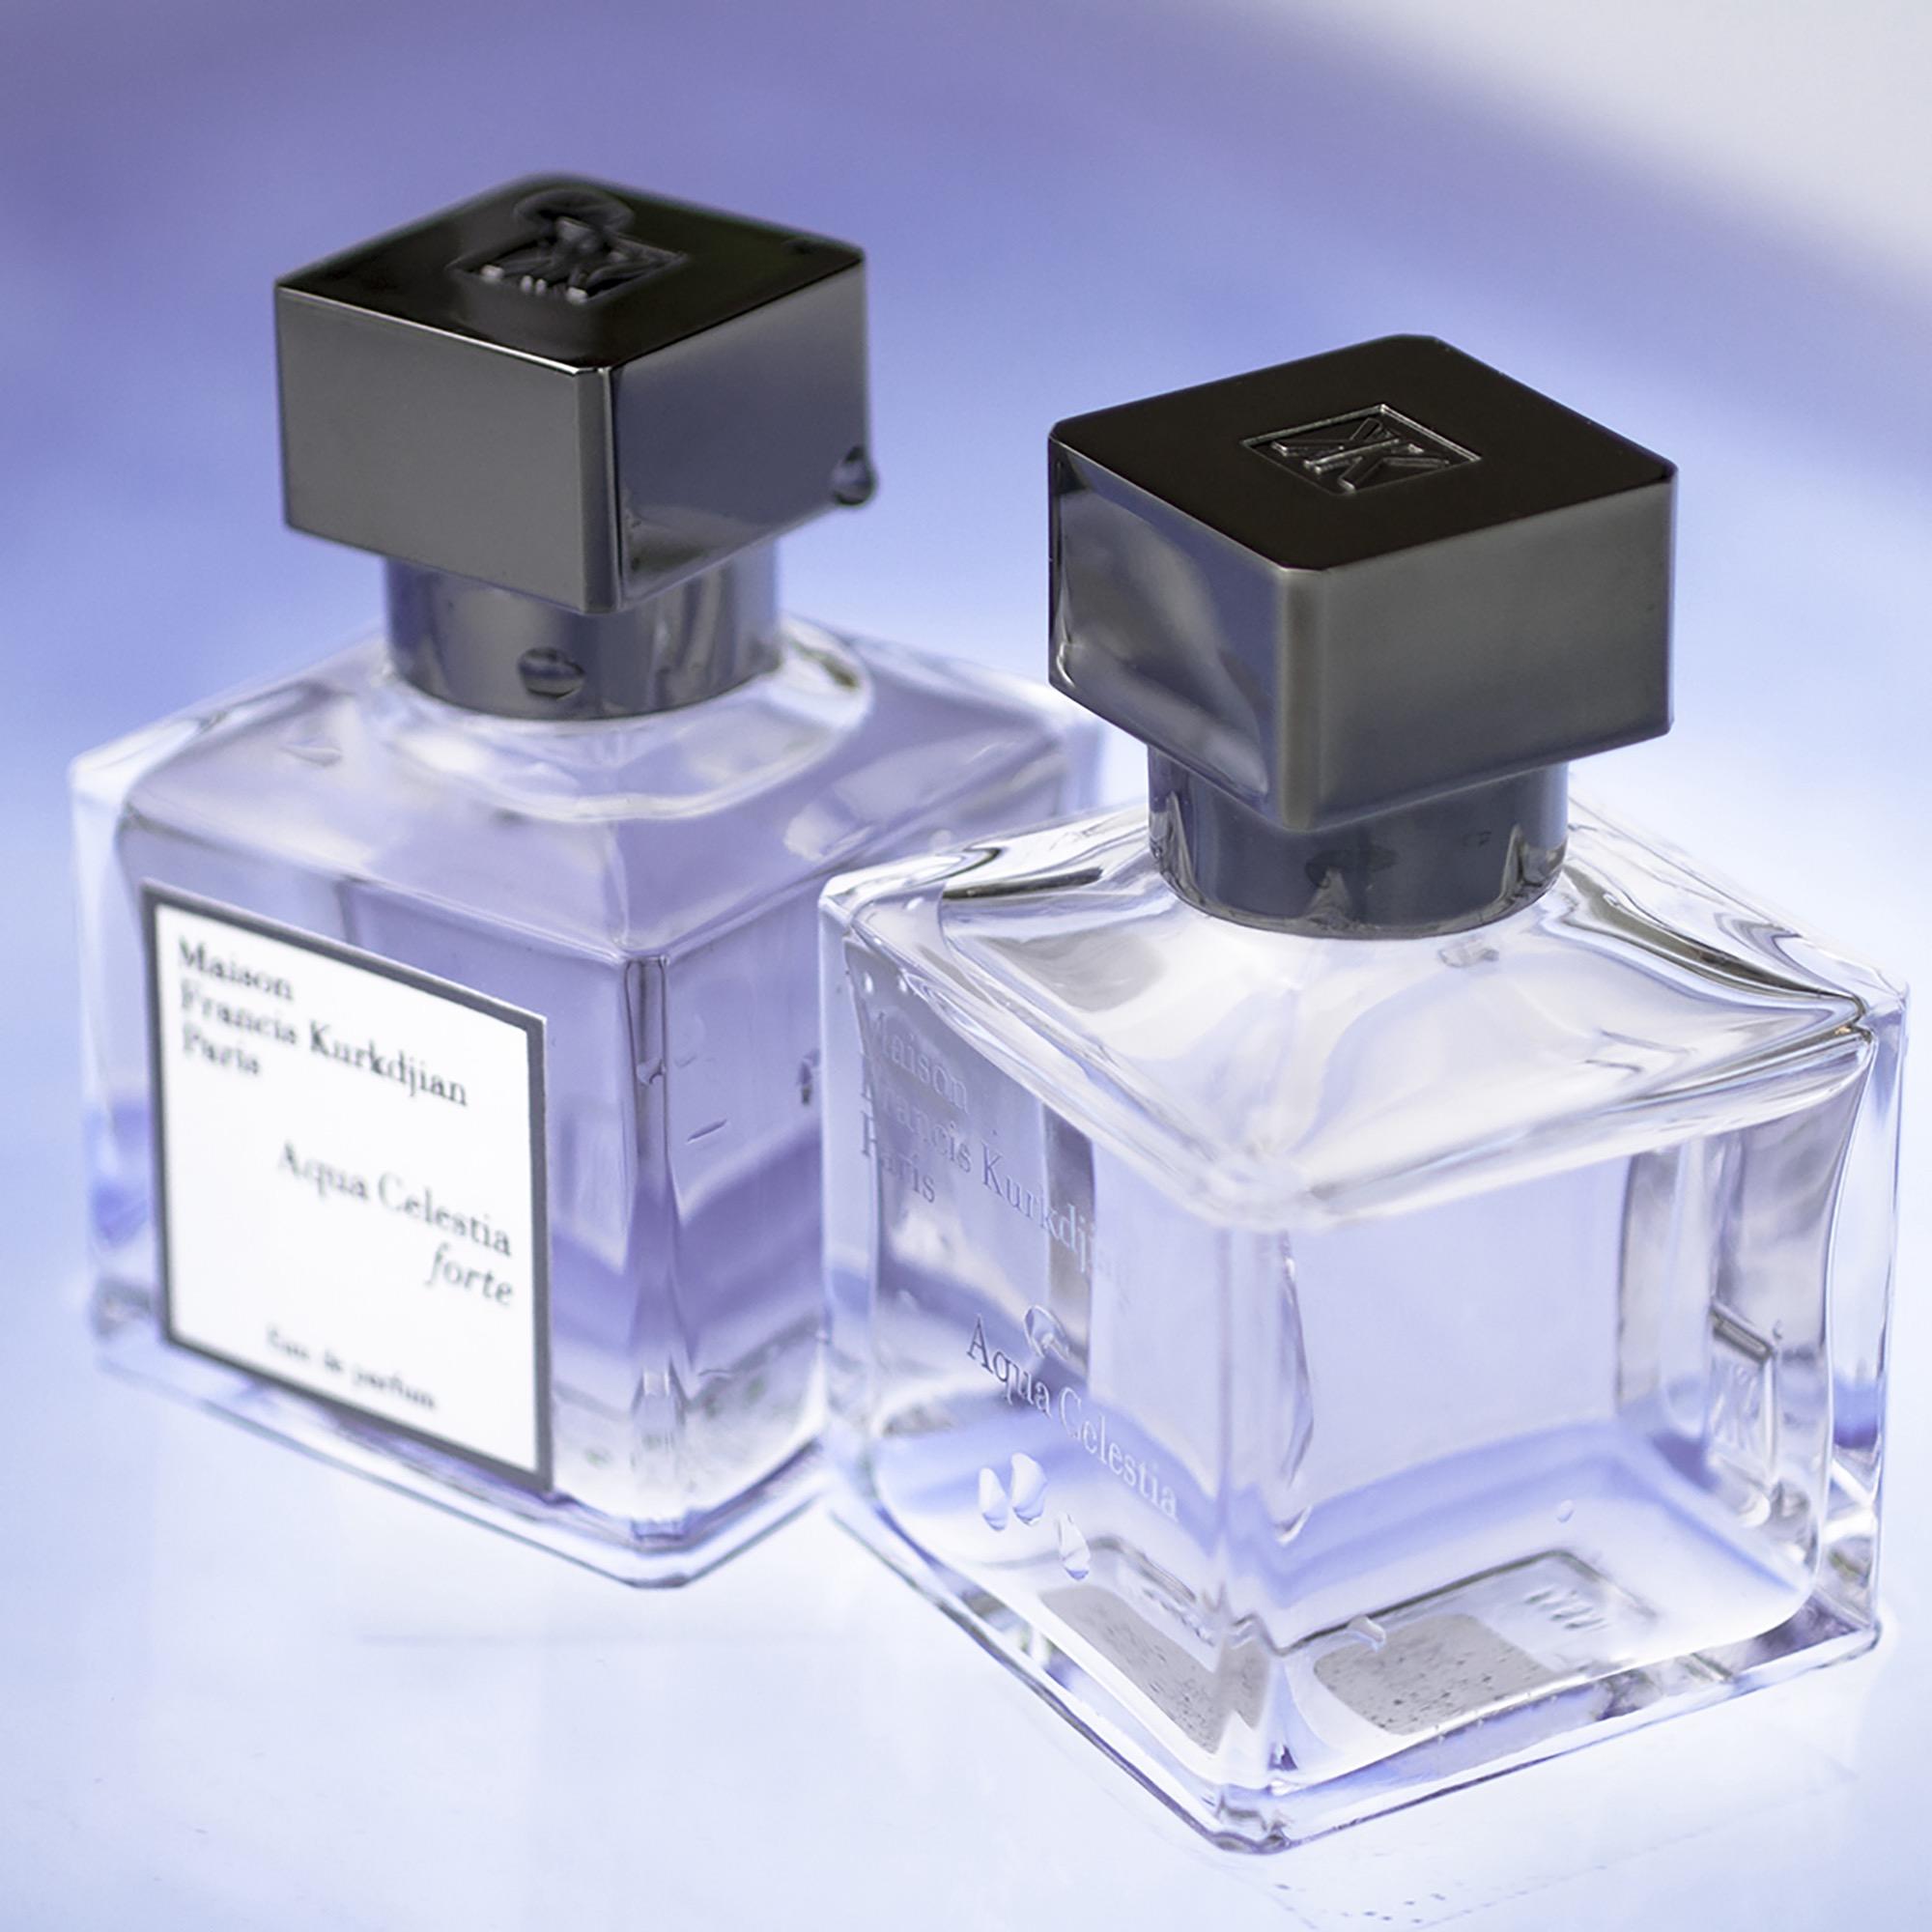 Maison Francis Kurkdjian - Aqua Celestia | Perfume Lounge